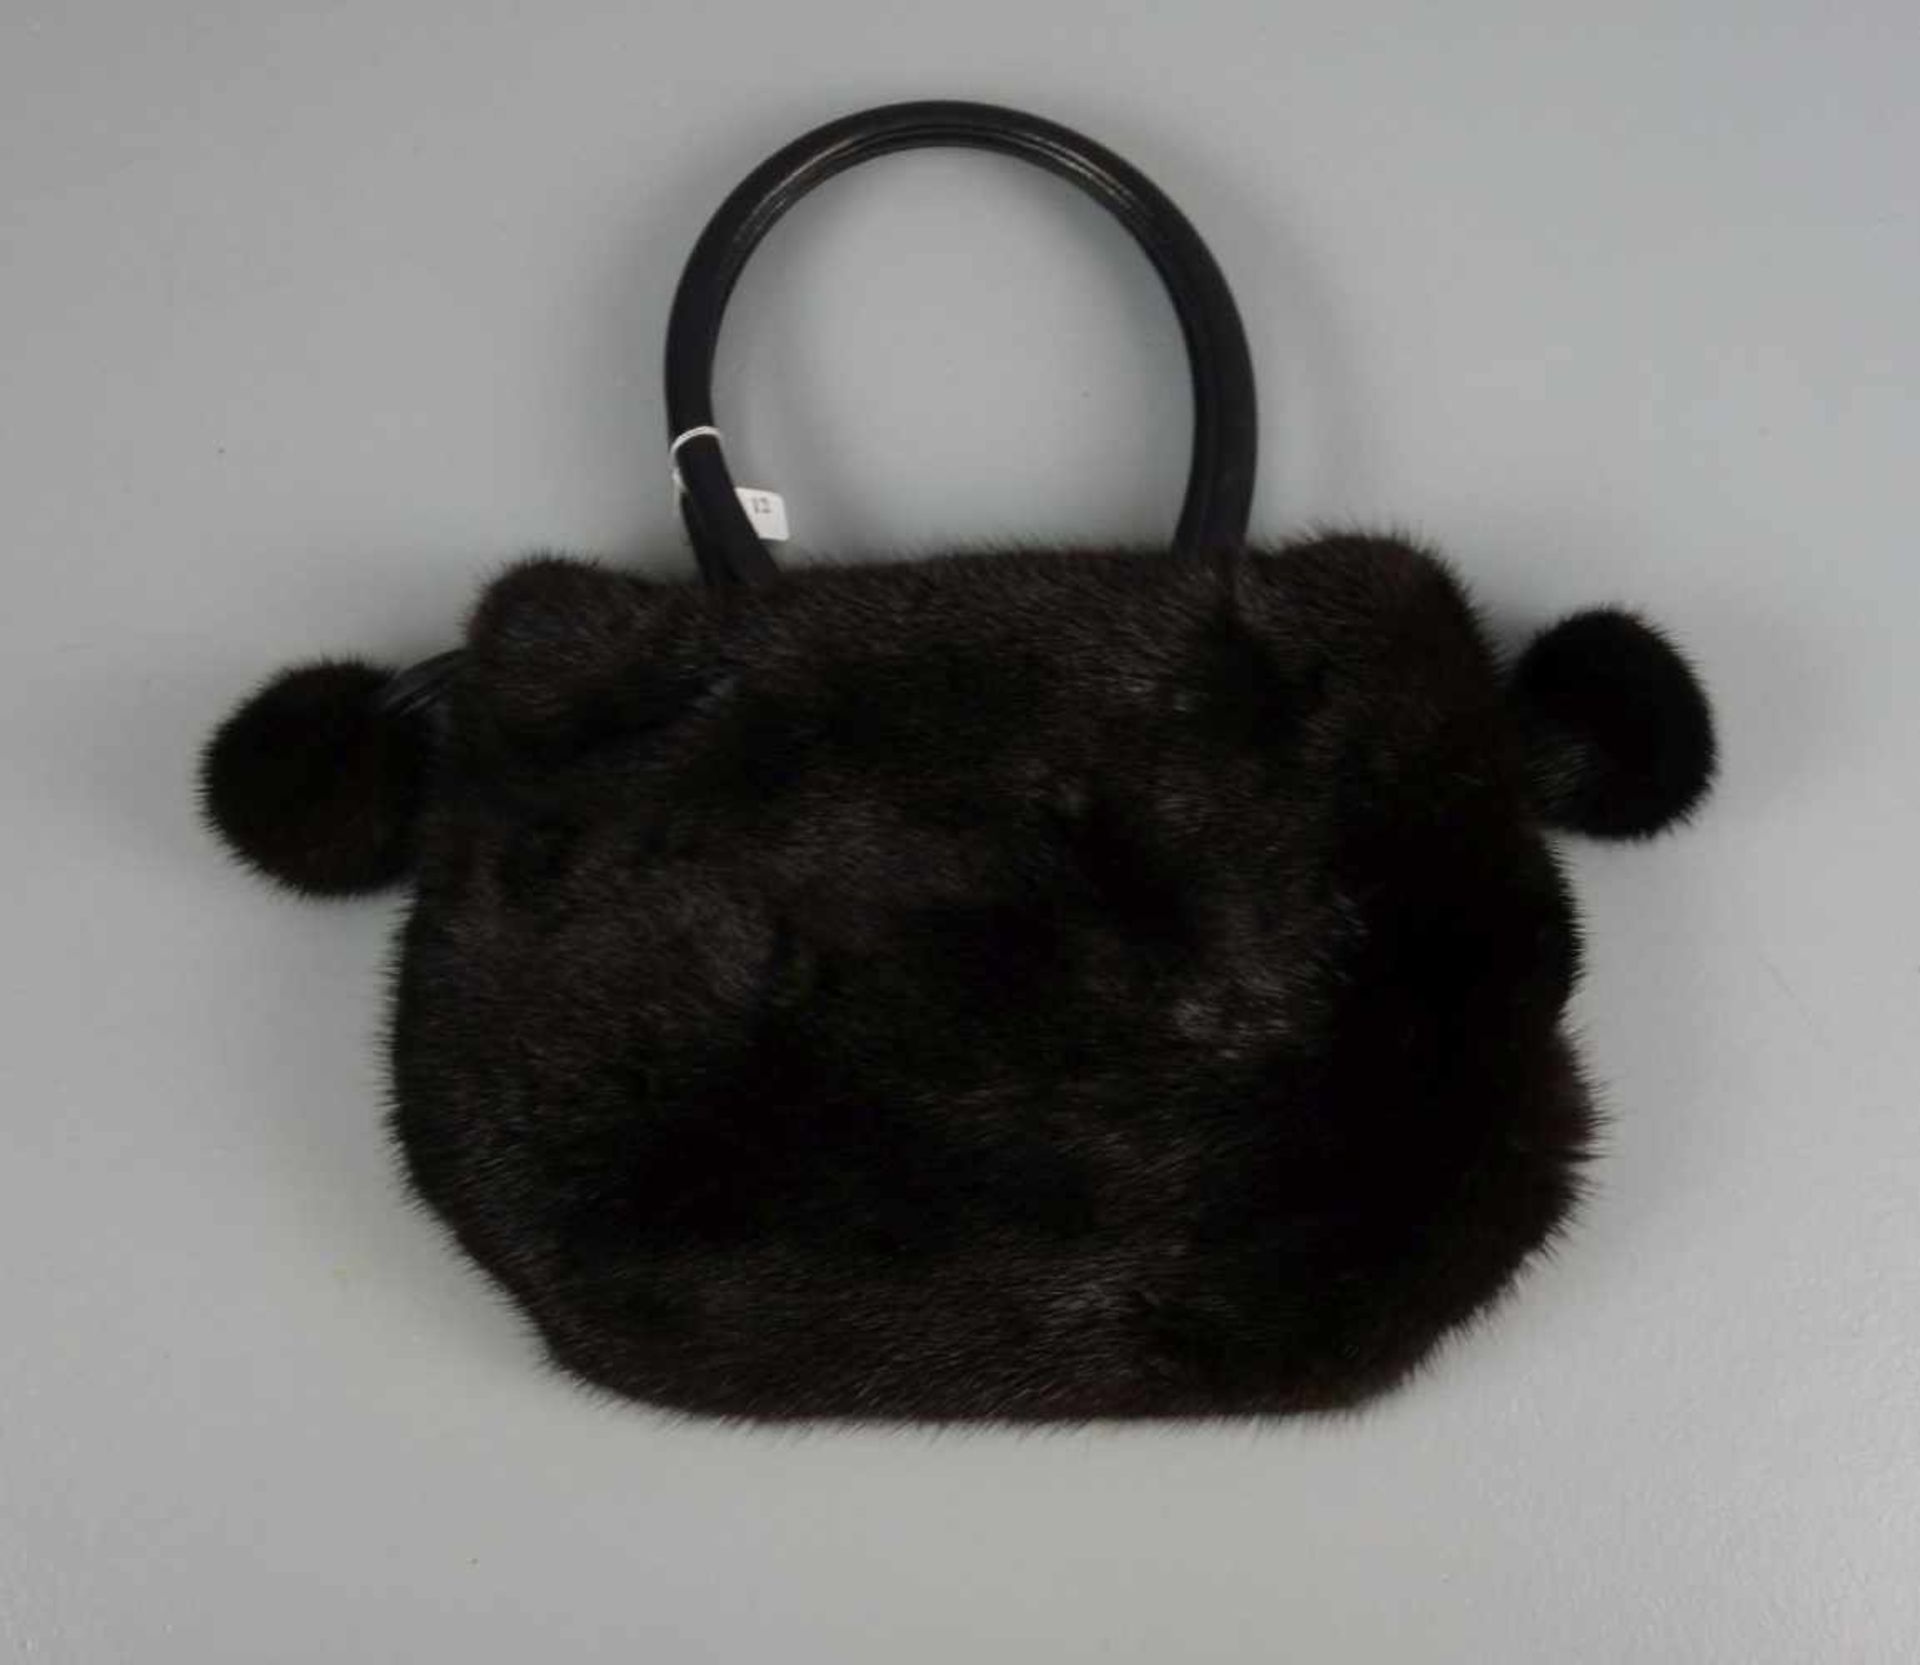 NERZ - HANDTASCHE / mink handbag. Schwarzer, schmalrechteckiger Lederstand, leichte Trapezform, - Image 2 of 3